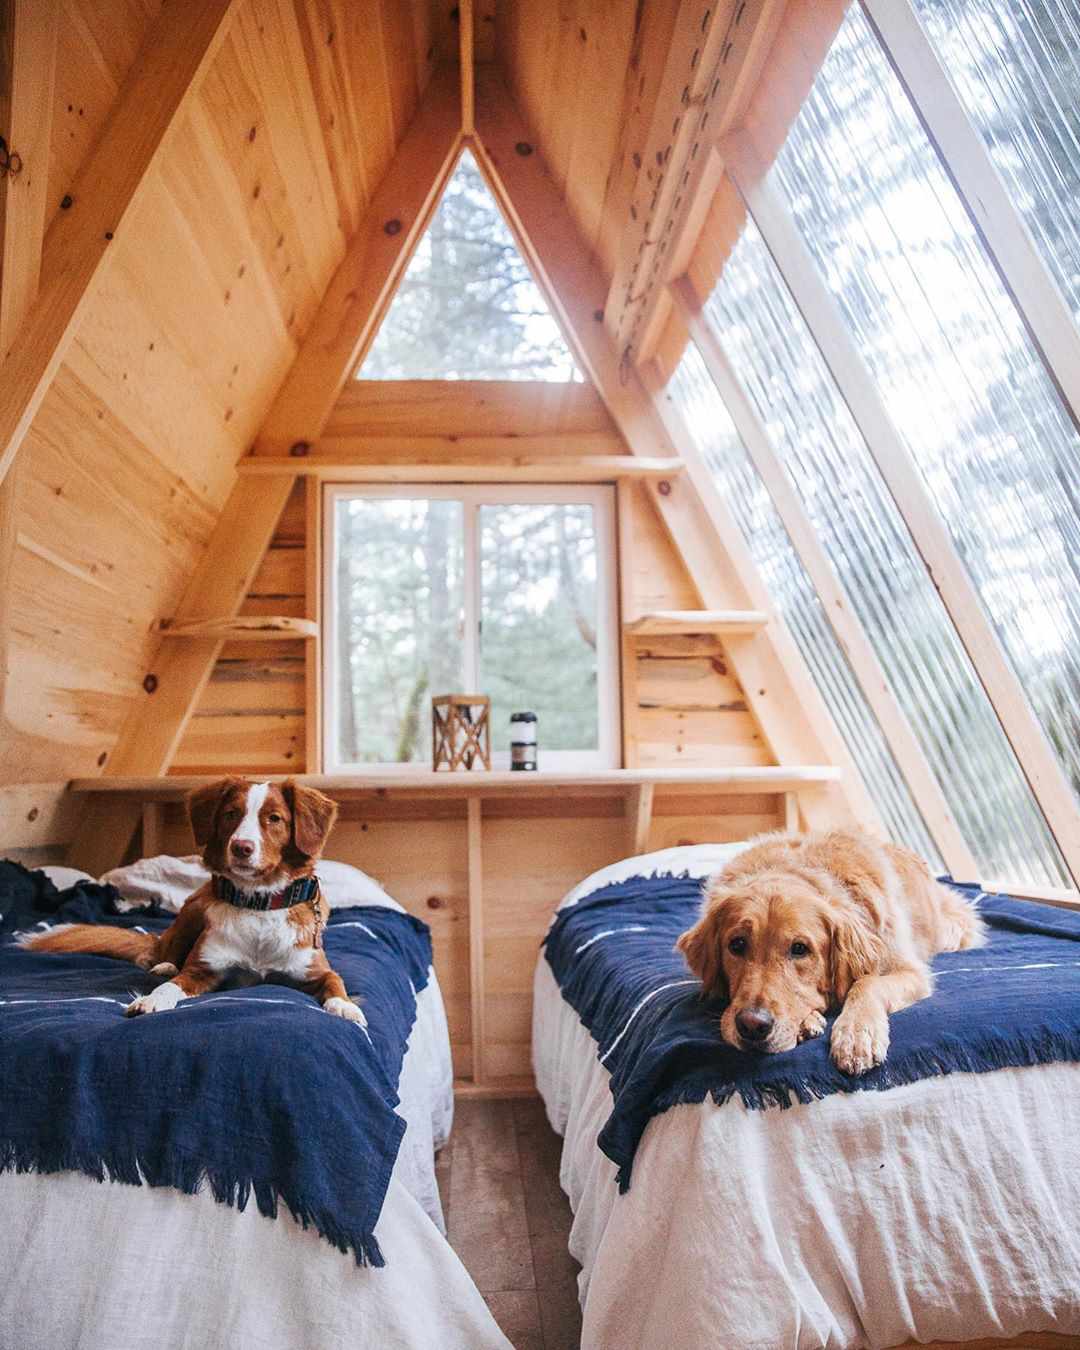 Hütte mit zwei Hunden im Bett